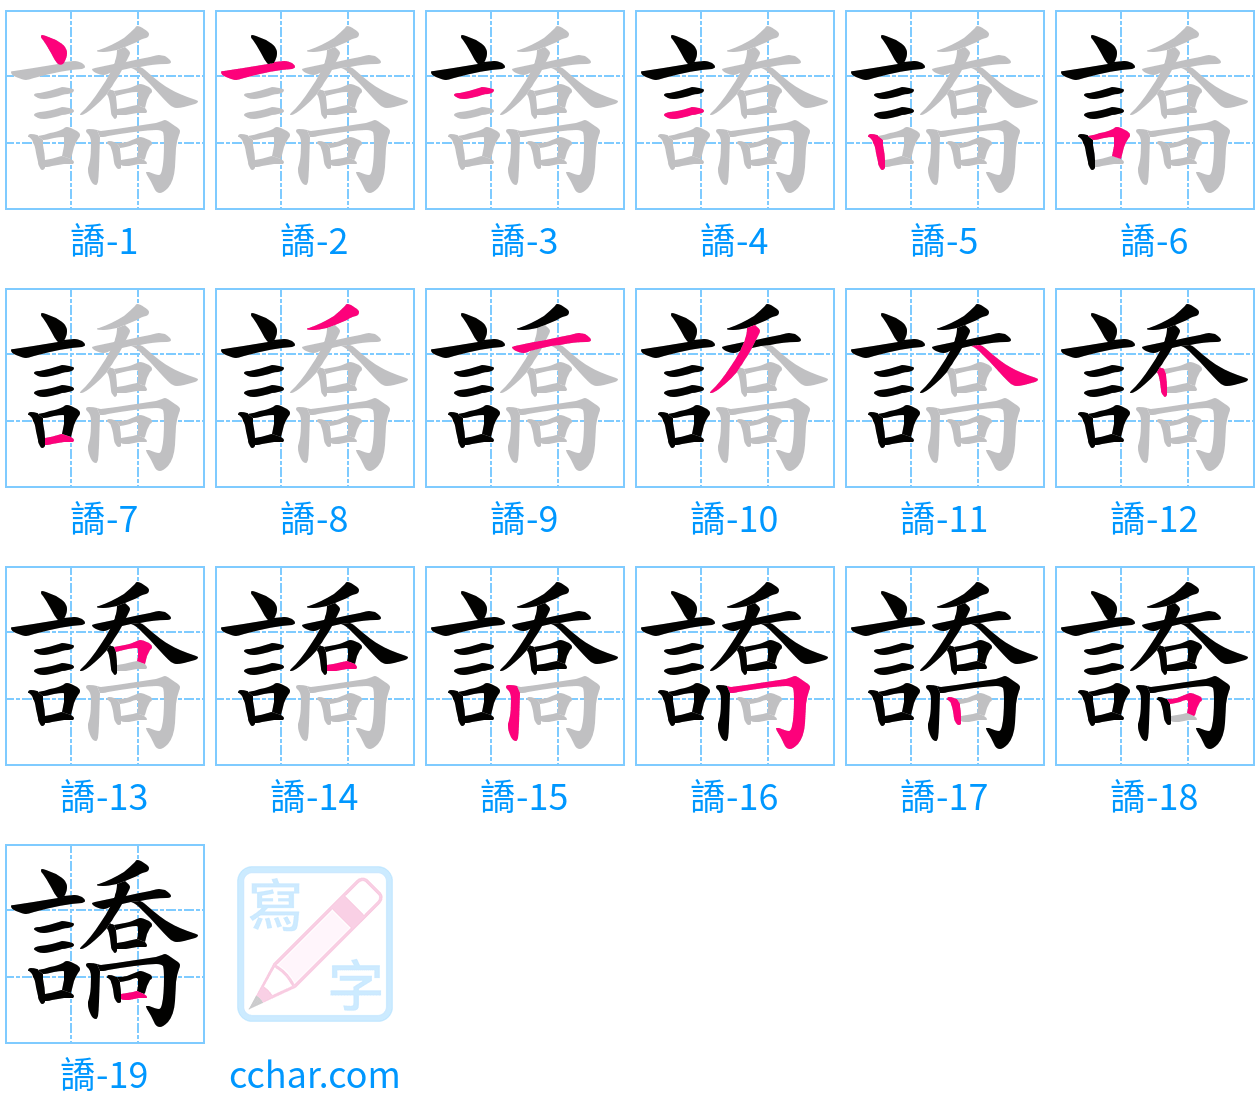 譑 stroke order step-by-step diagram